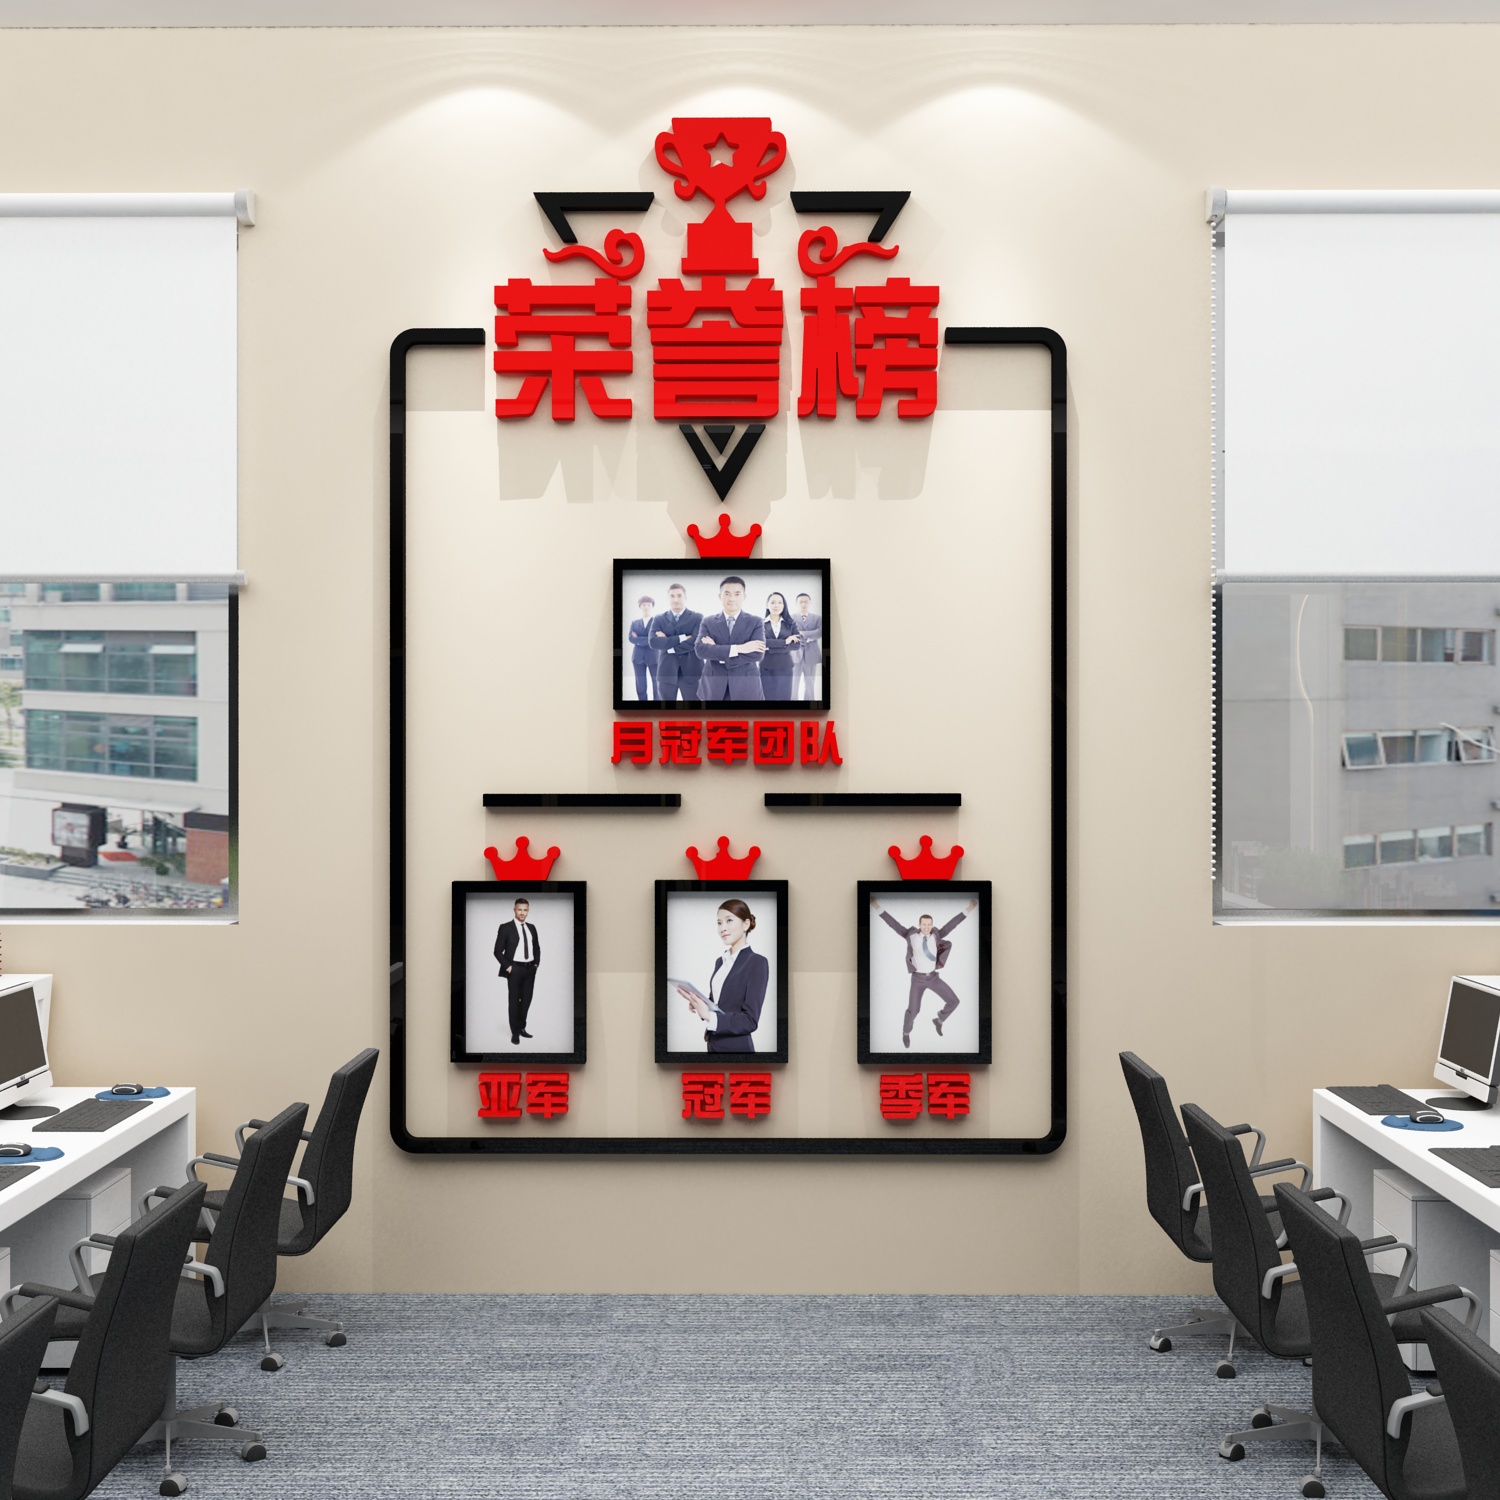 业绩荣誉榜优秀员工风采展示板光荣照片墙面贴公司文化办公室装饰 - 图1